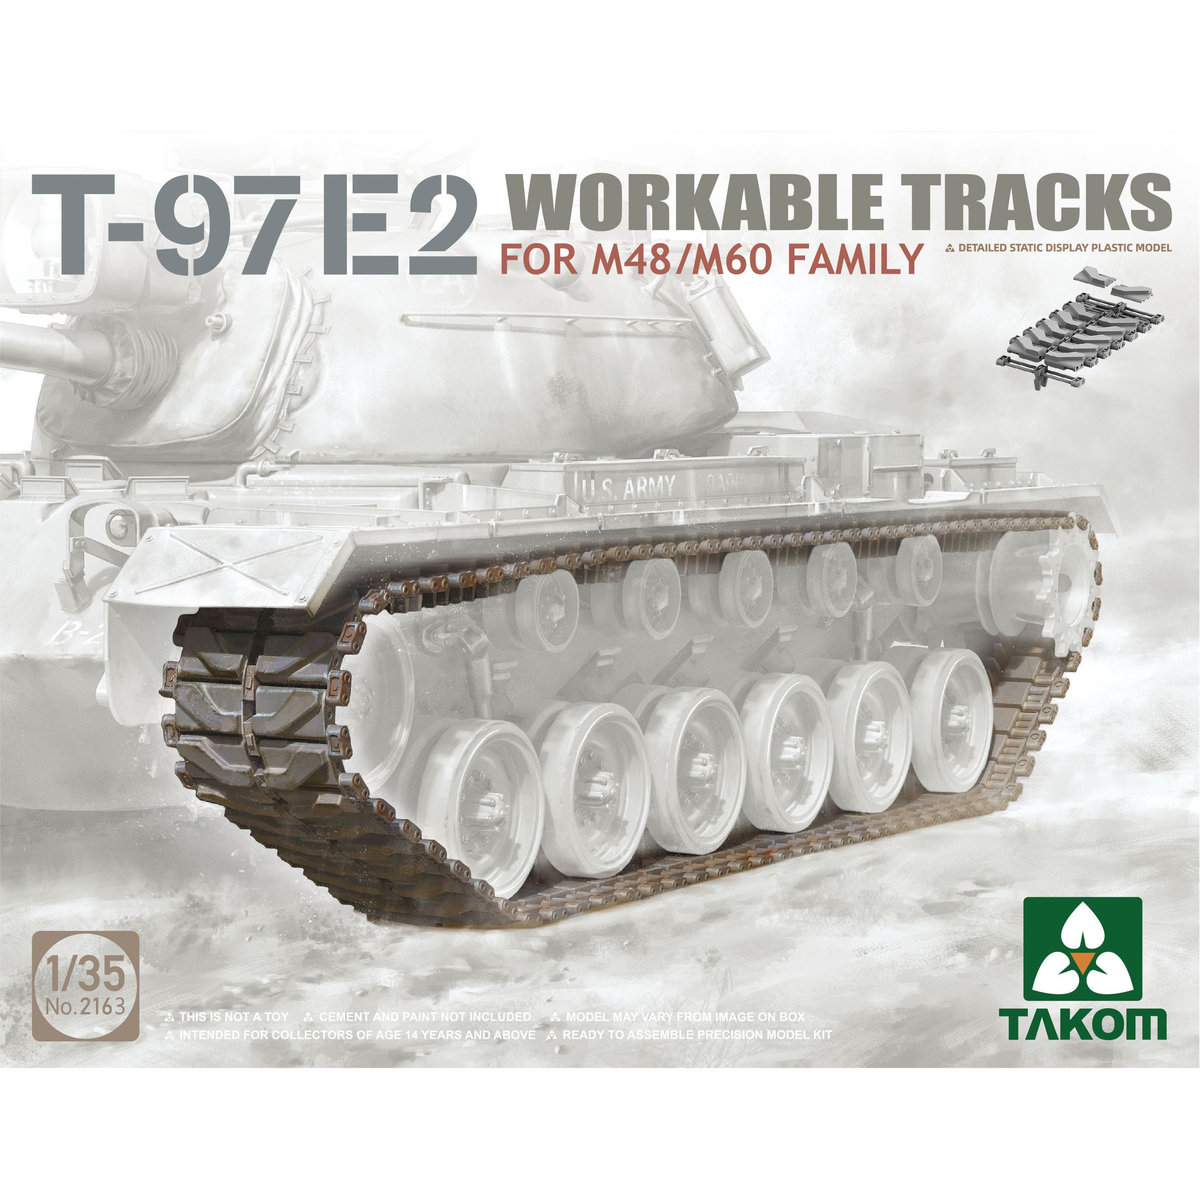 Takom 2163 1:35 T-97E2 Workable Tracks for M48/M60 Family Plastic Model Kit